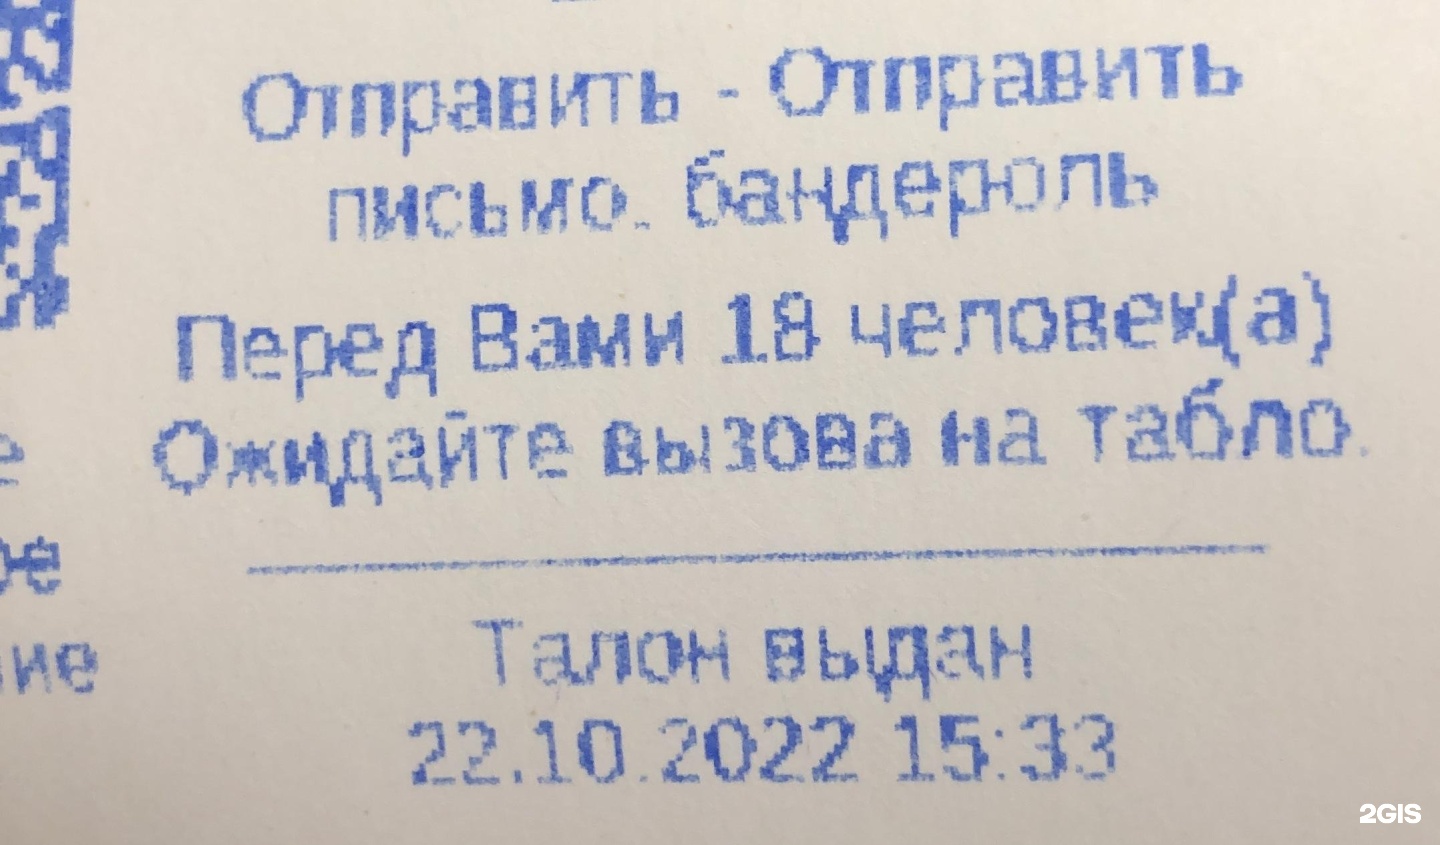 Отправить телеграмму по телефону почта россии телефон фото 52